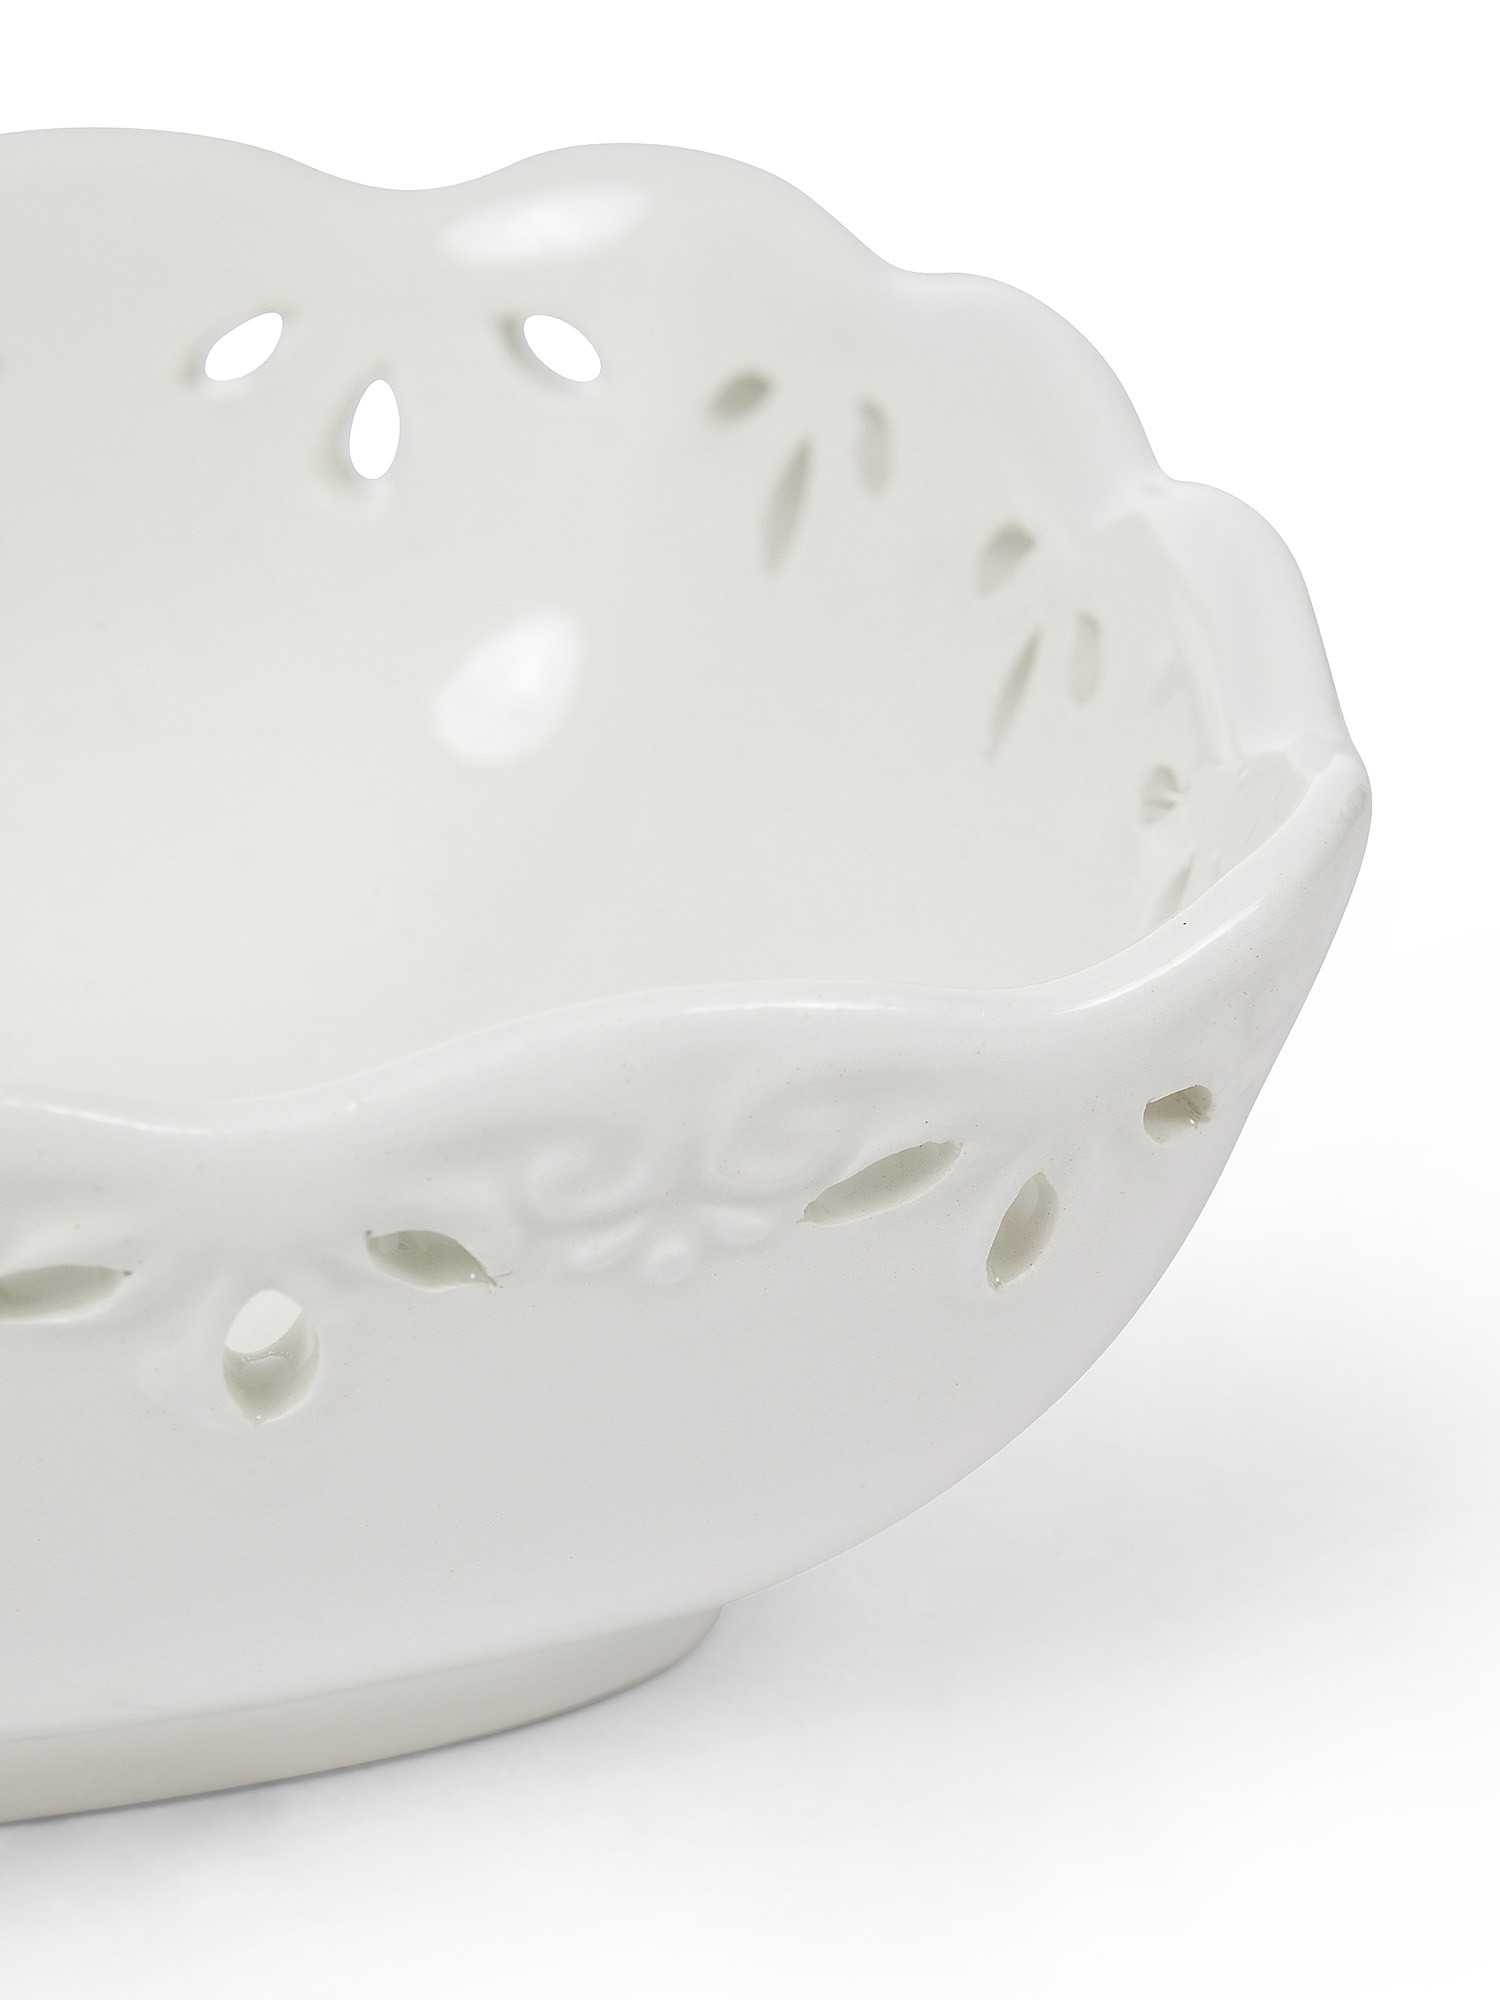 Coppetta ceramica traforata, Bianco, large image number 1